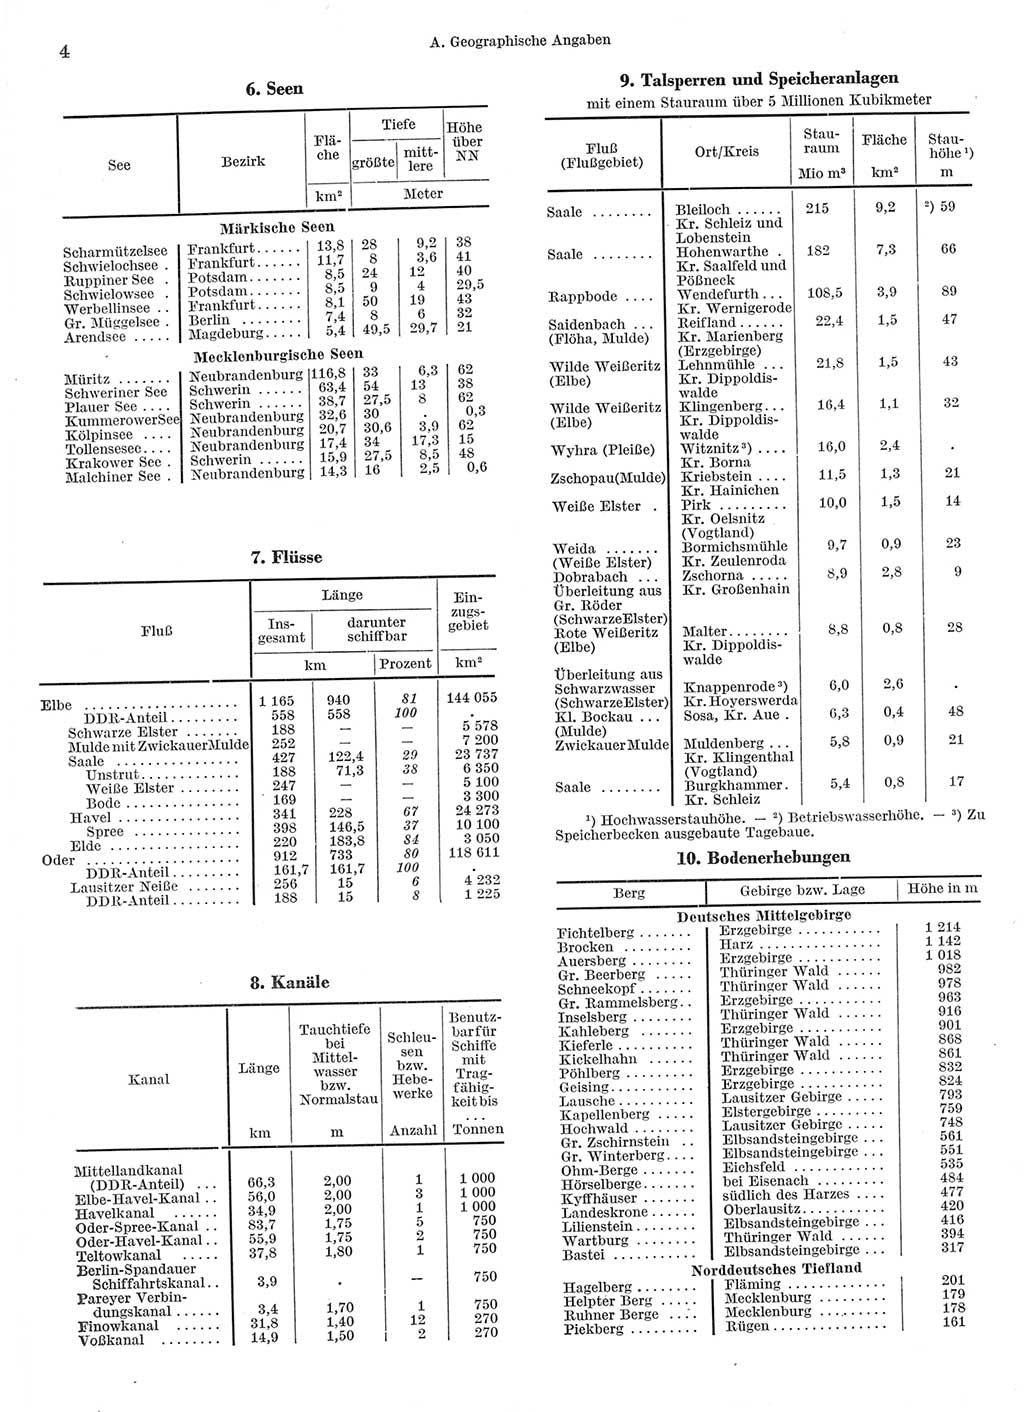 Statistisches Jahrbuch der Deutschen Demokratischen Republik (DDR) 1962, Seite 4 (Stat. Jb. DDR 1962, S. 4)